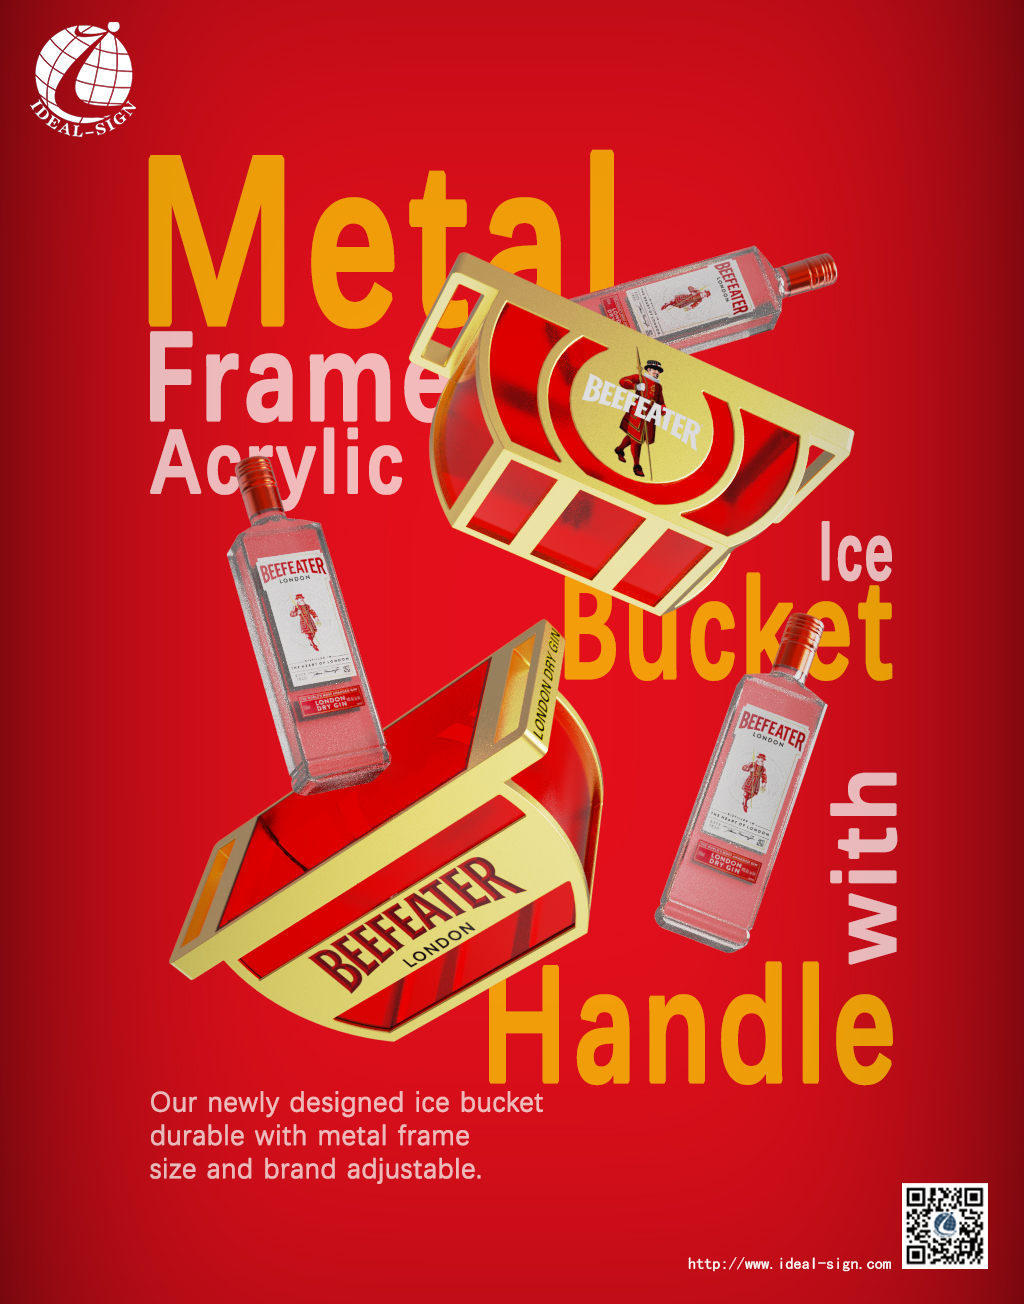 Metal Frame Acrylic Ice Bucket with Handle